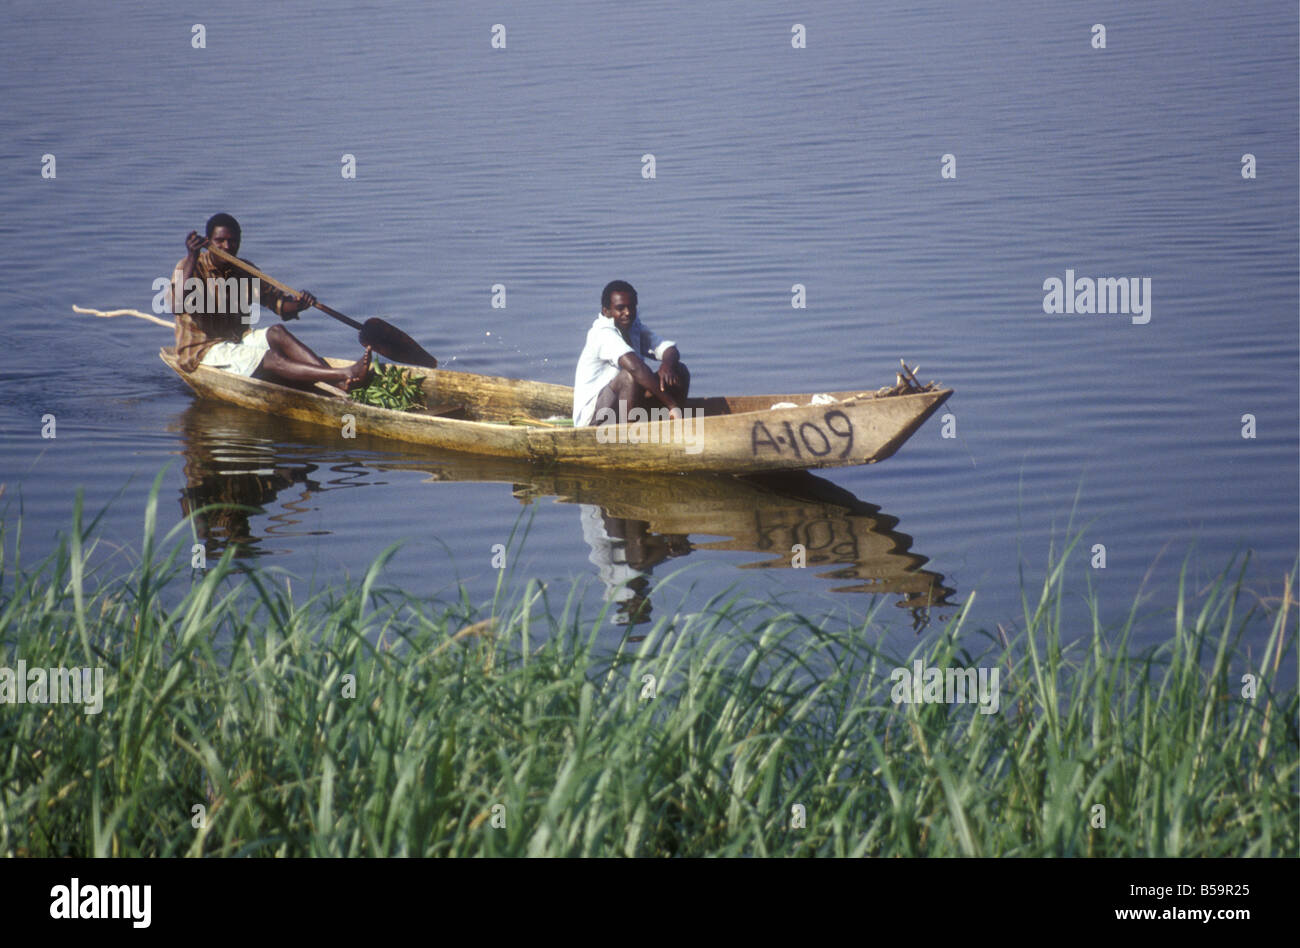 two-black-african-men-fishermen-paddling-their-wooden-dug-out-canoe-B59R25.jpg